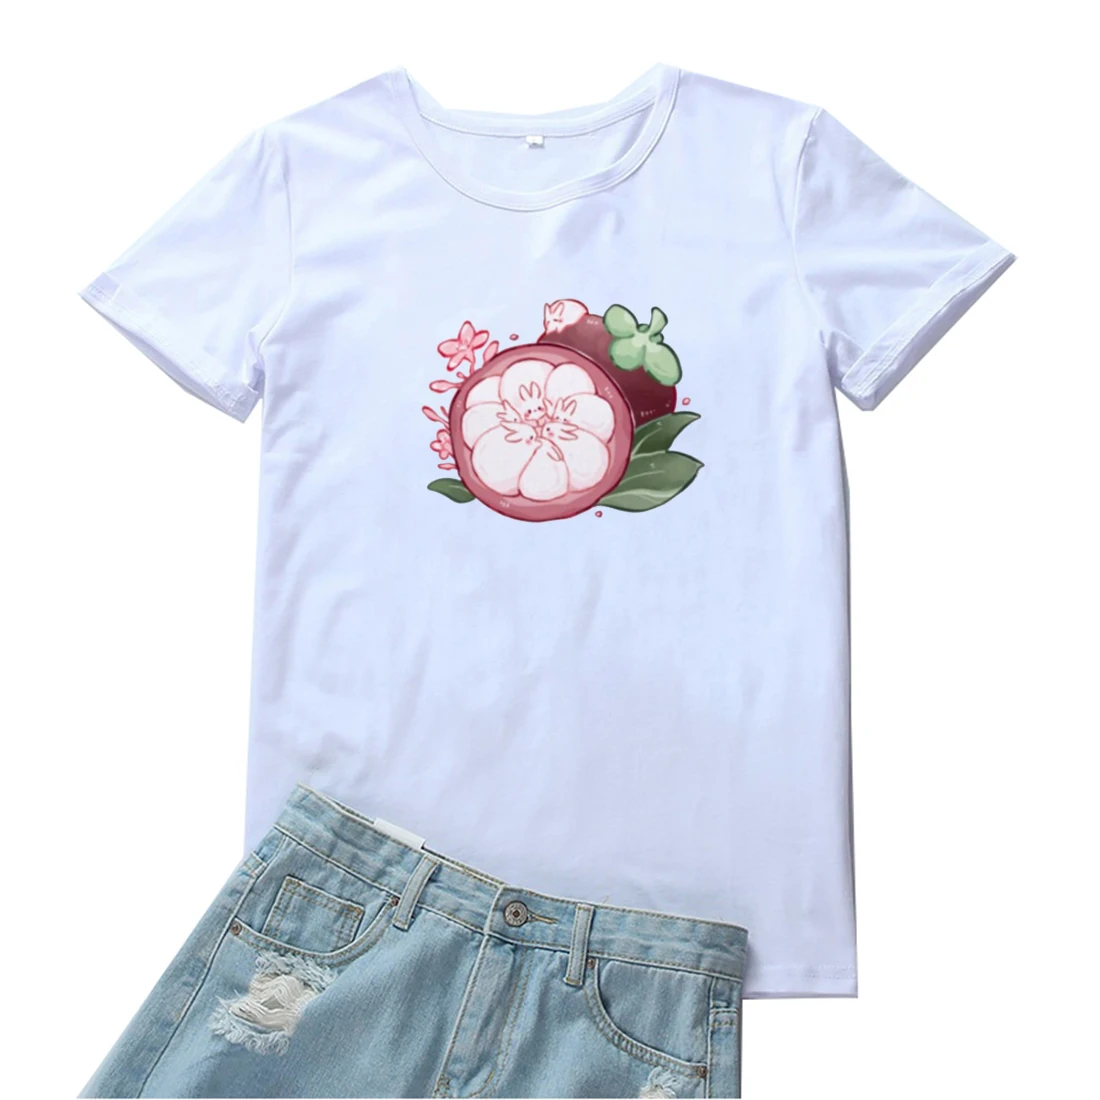 

Женская футболка с принтом кролика и мангостина, футболка в стиле Харадзюку с принтом фруктов, женские футболки с графическим принтом, женс...